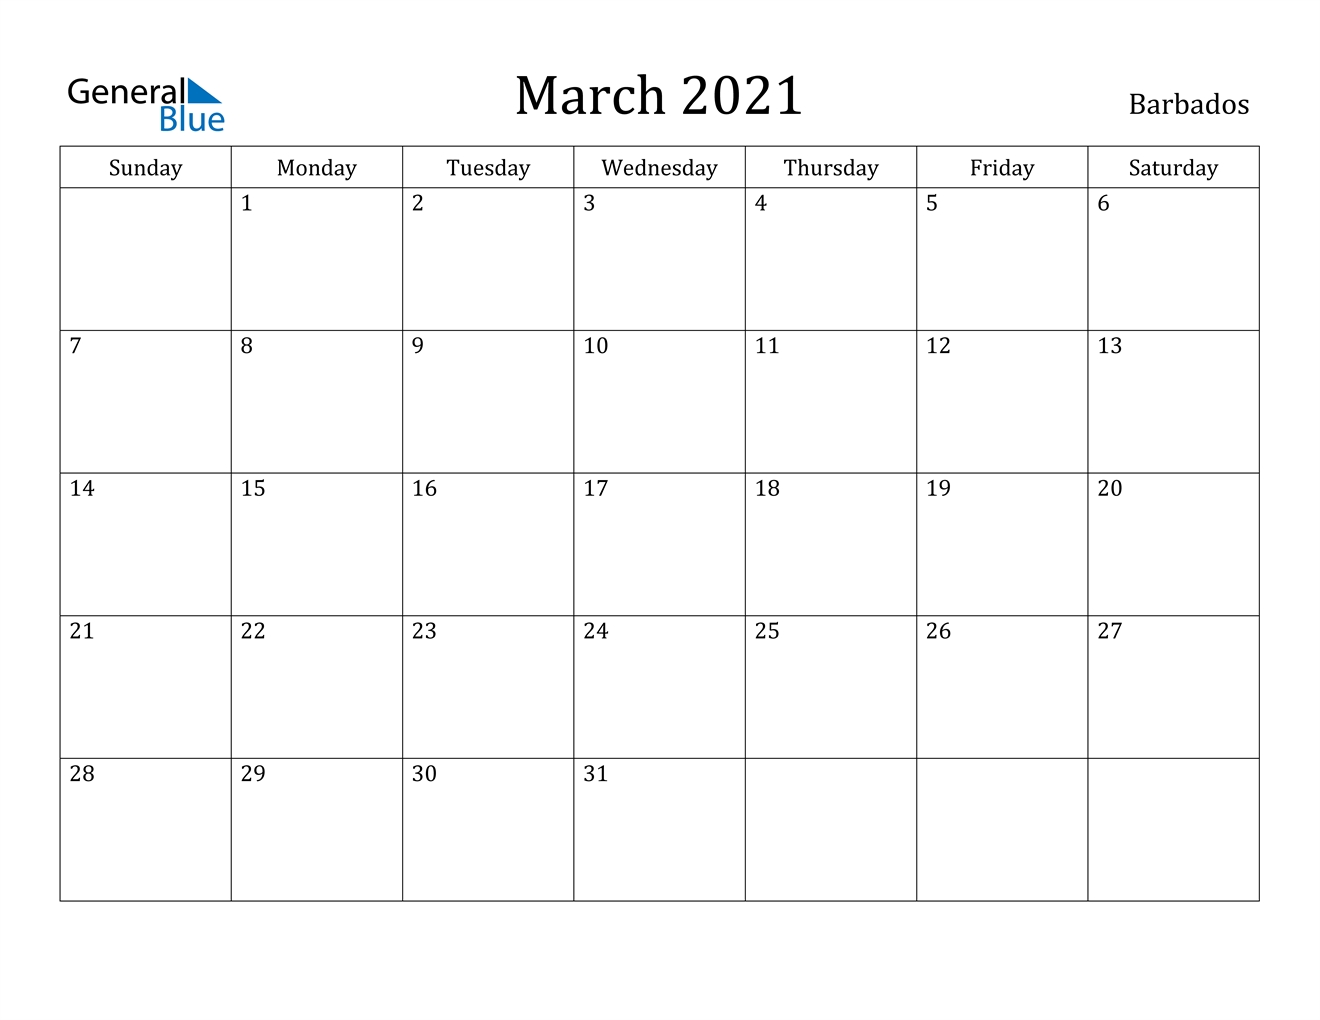 March 2021 Calendar - Barbados